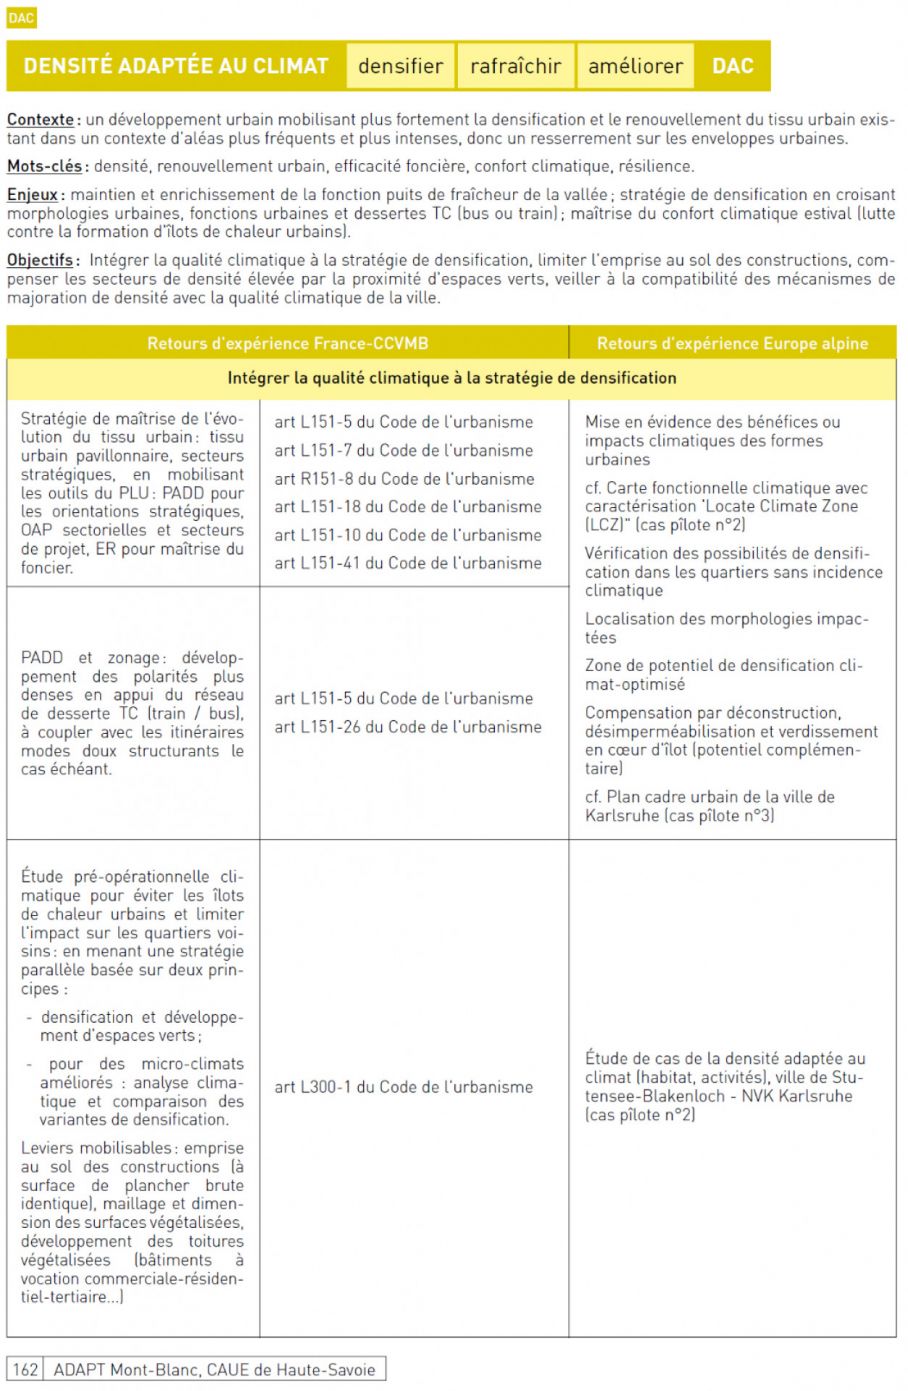 2/ Boîte à outil « adattamento al cambiamento climatico » - CAUE Haute-Savoie estratto p162 (sintesi) e schema : verso una transizione climatica dei documenti di pianificazione dell'EMB